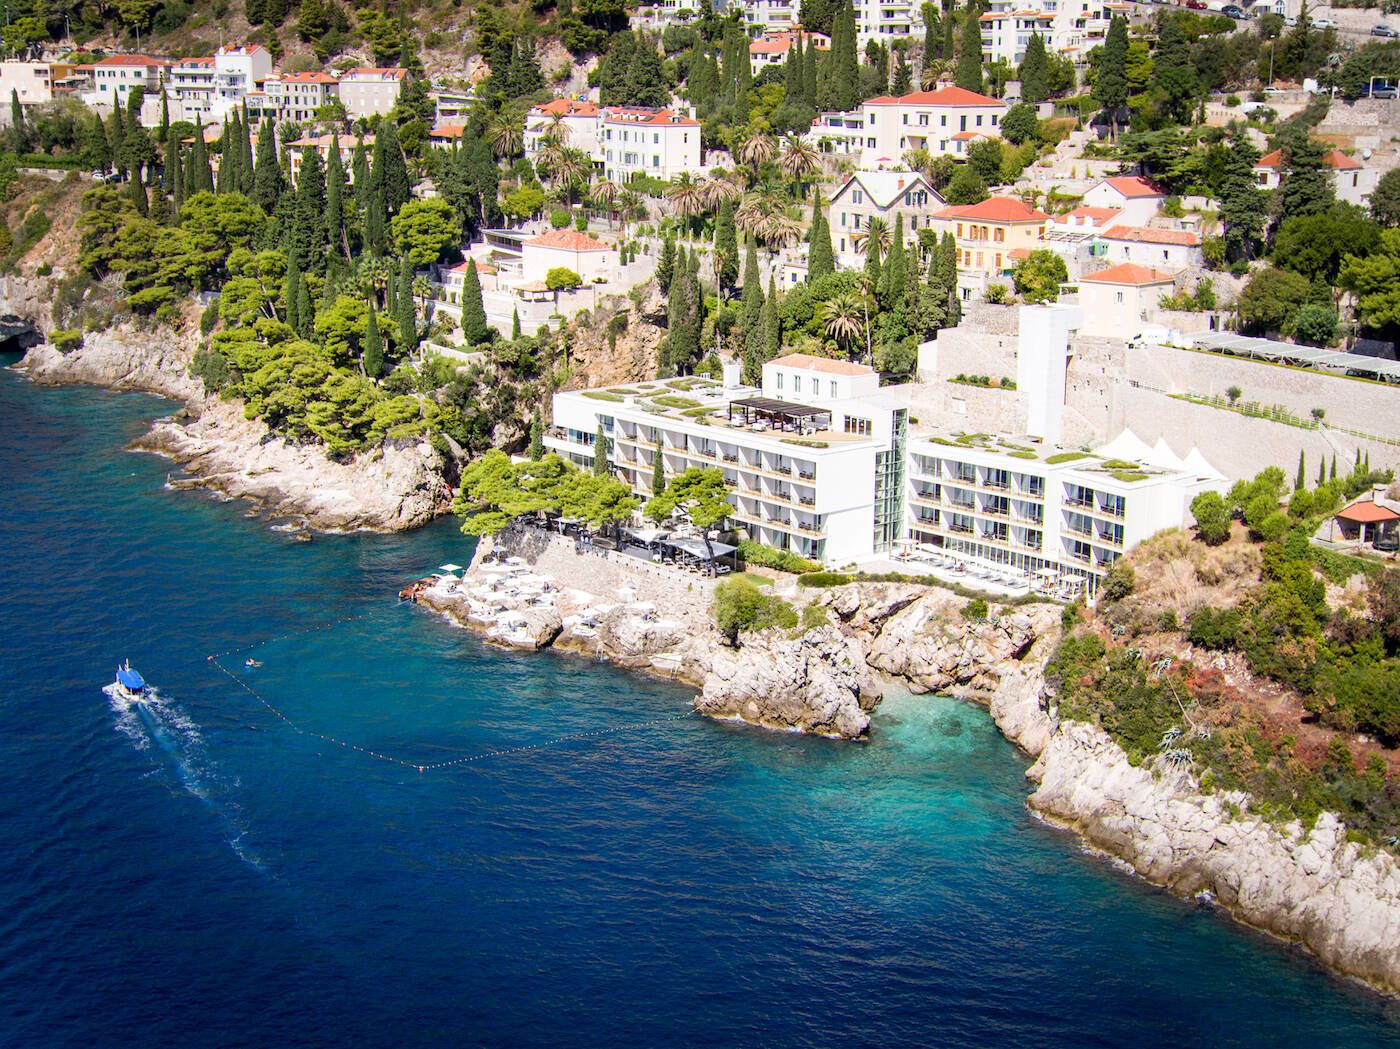 Imagen: Cortesía del Hotel Villa Dubrovnik